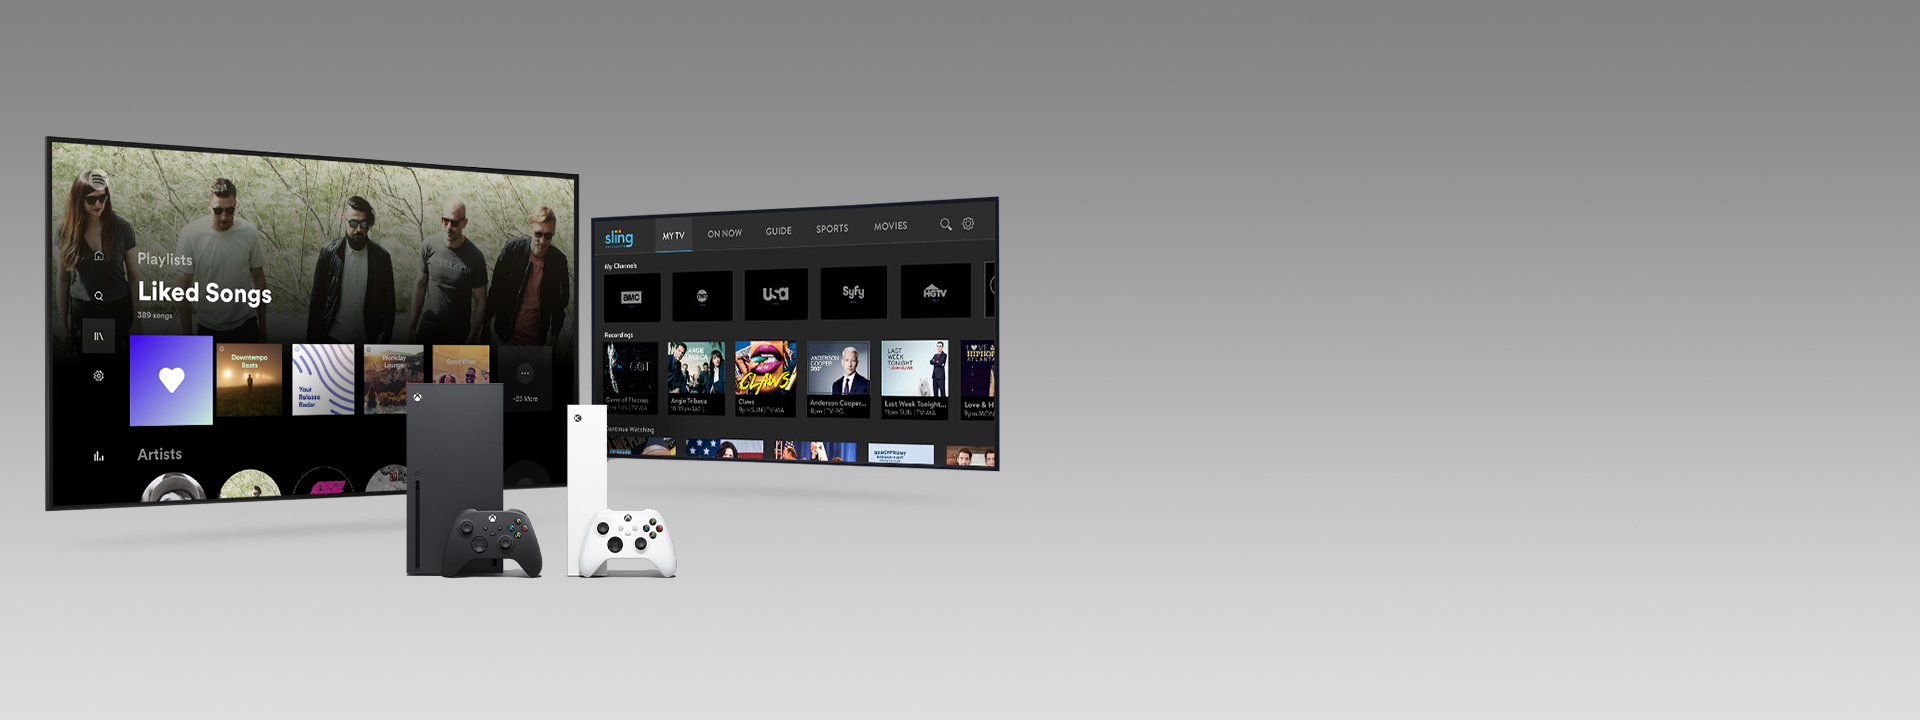 Eine Xbox Series X und Series S mit Controllern vor zwei Fernsehbildschirmen mit App-Benutzeroberflächen.